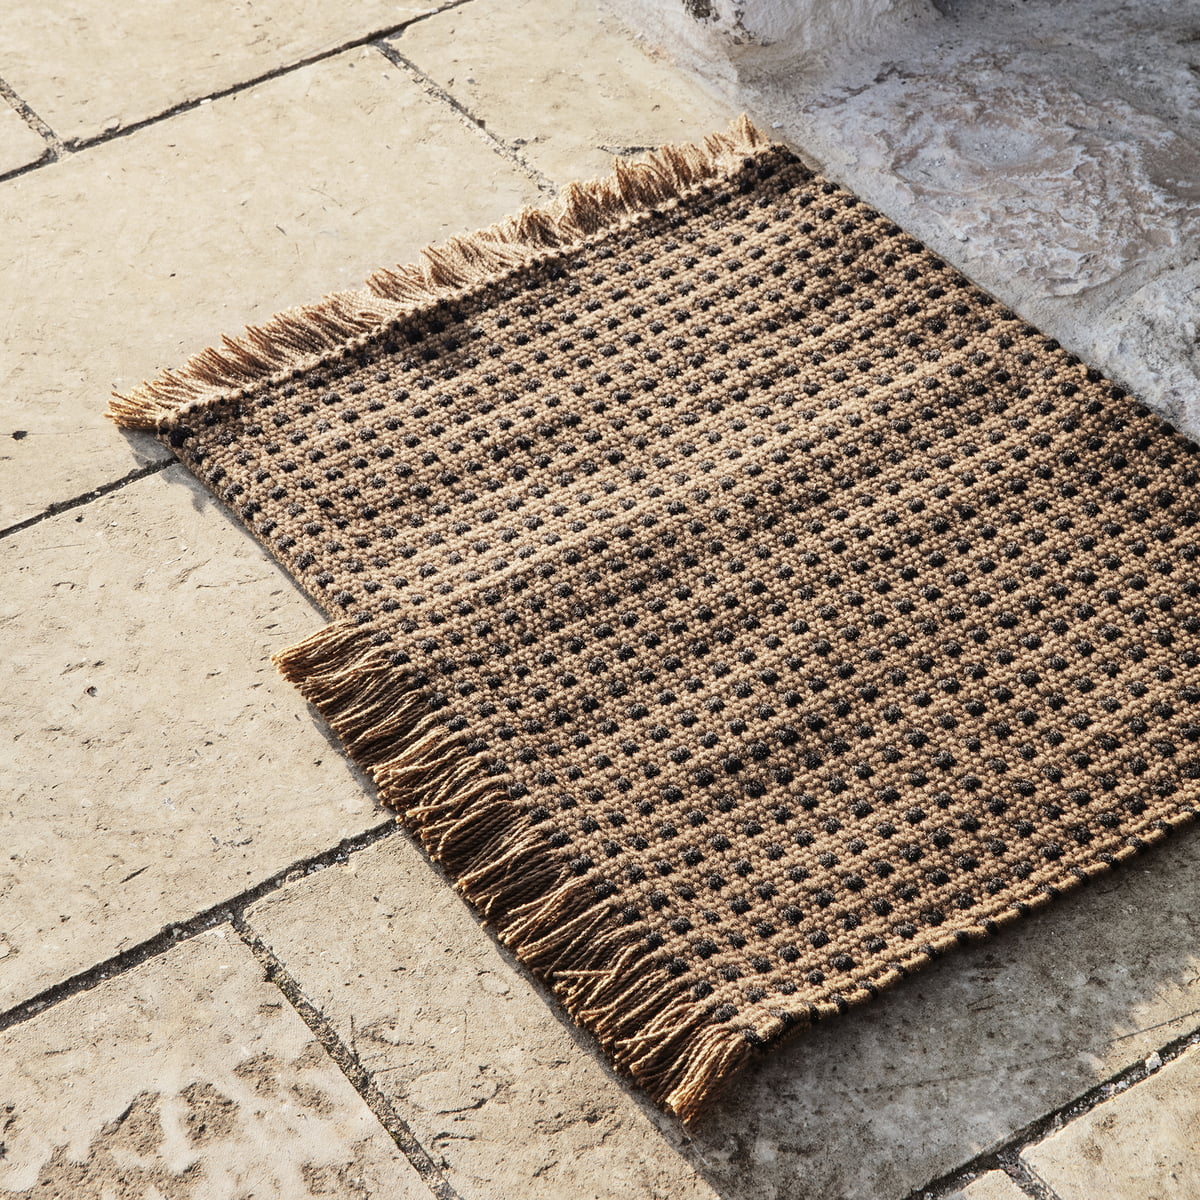 ferm living - Way outdoor mat